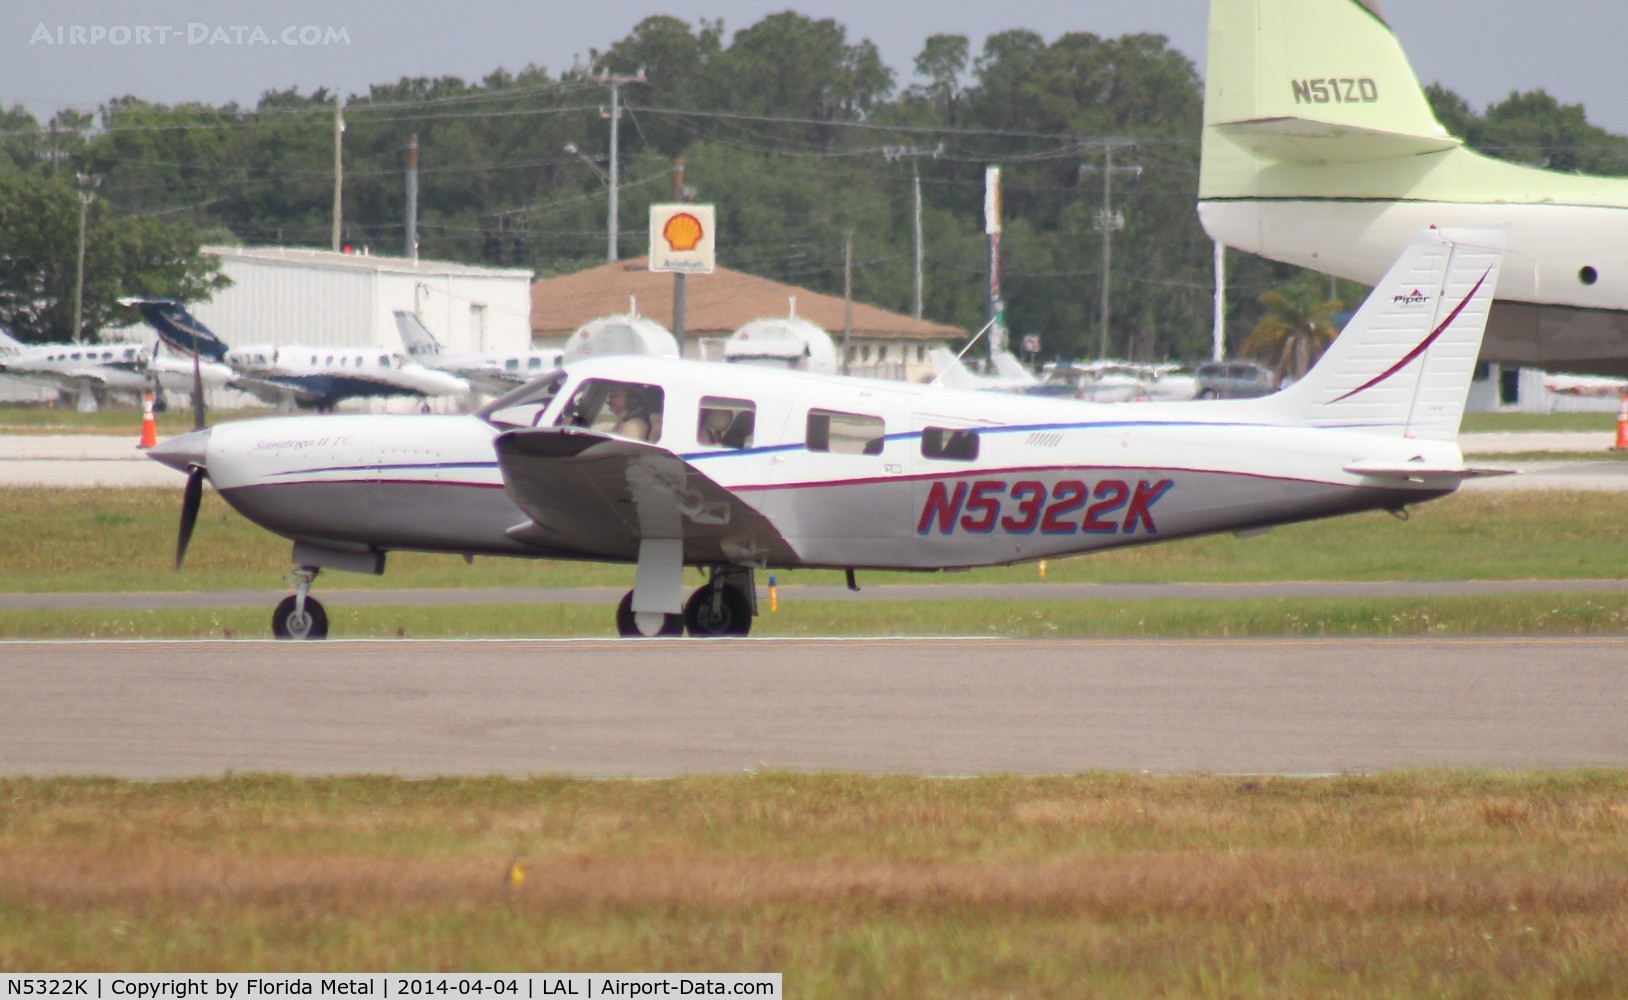 N5322K, 2001 Piper PA-32R-301T Turbo Saratoga C/N 3257243, PA-32R-301T